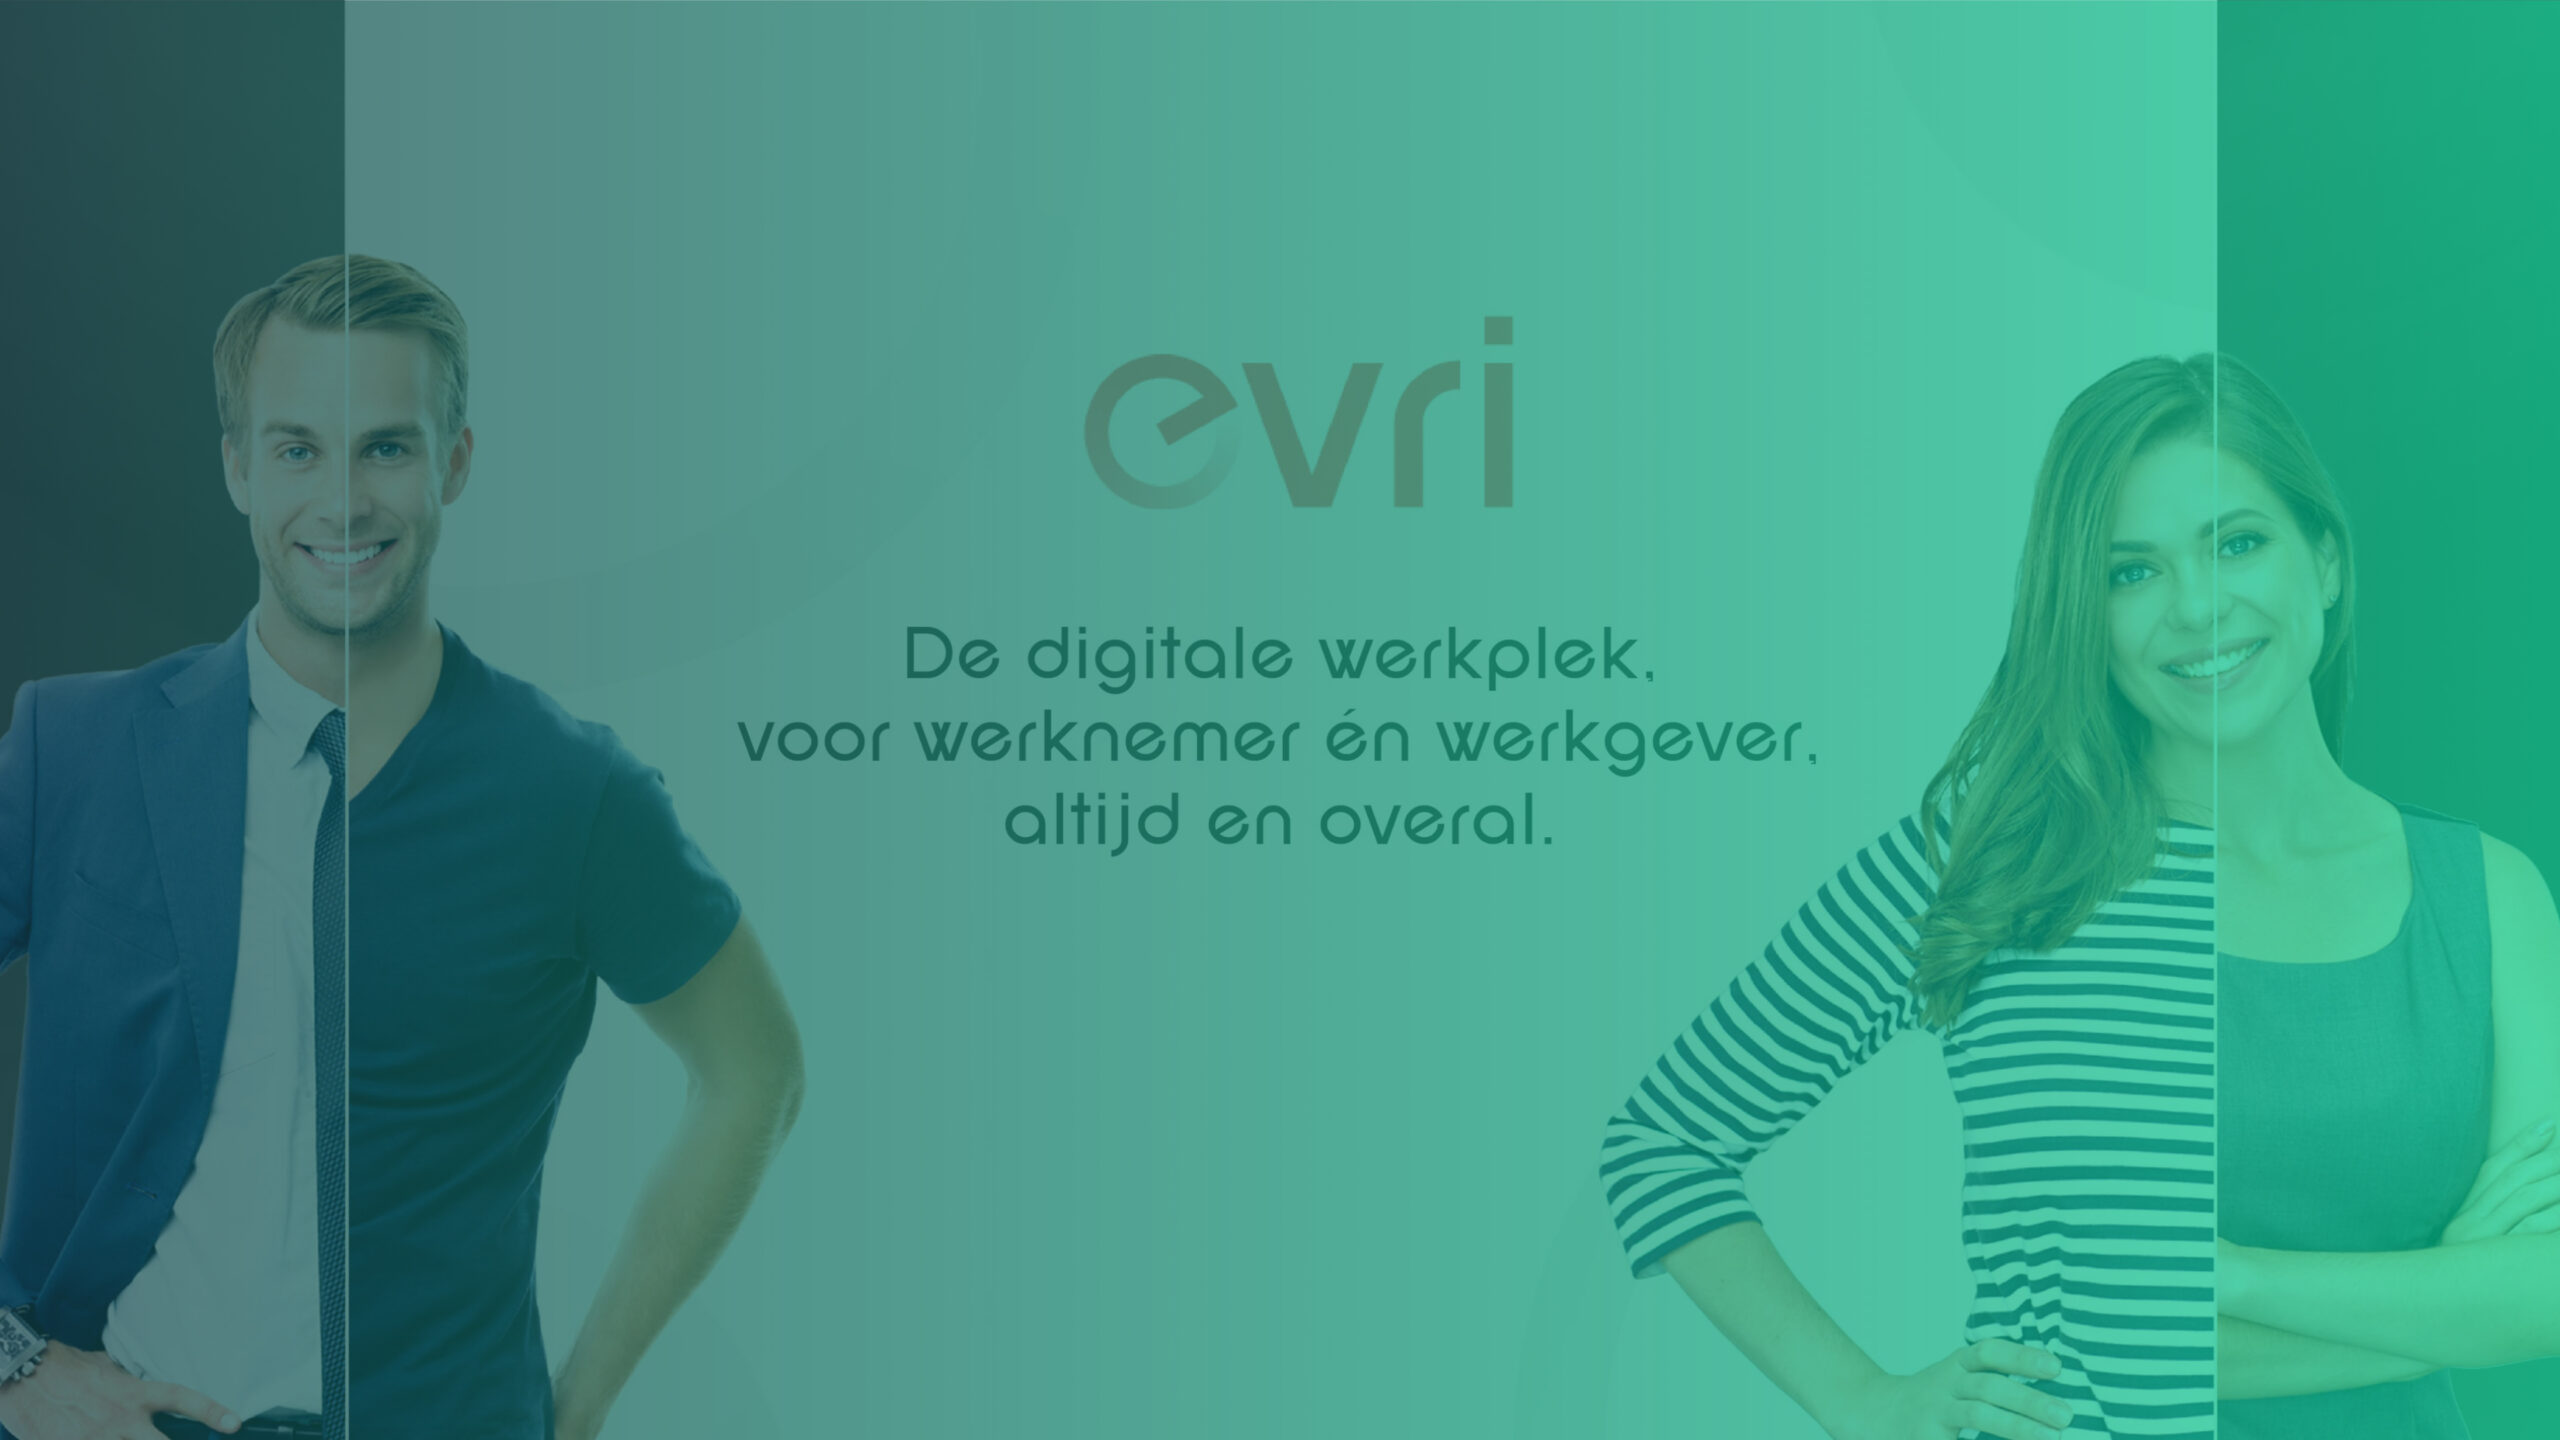 Een digitale werkplek voor iedereen dankzij eVri